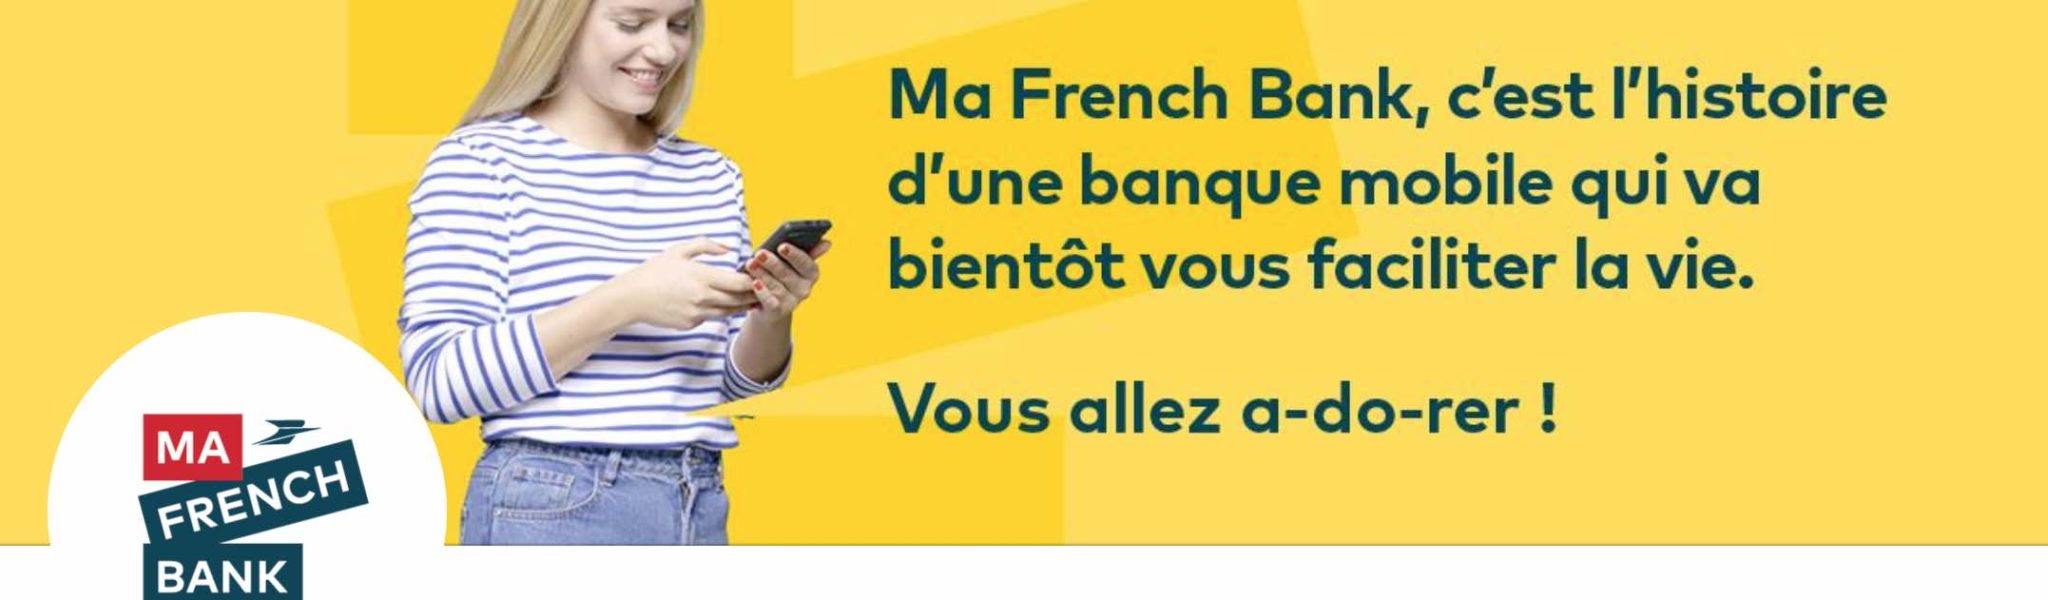 Ma French Bank augmente ses tarifs pour devenir le compte idéal